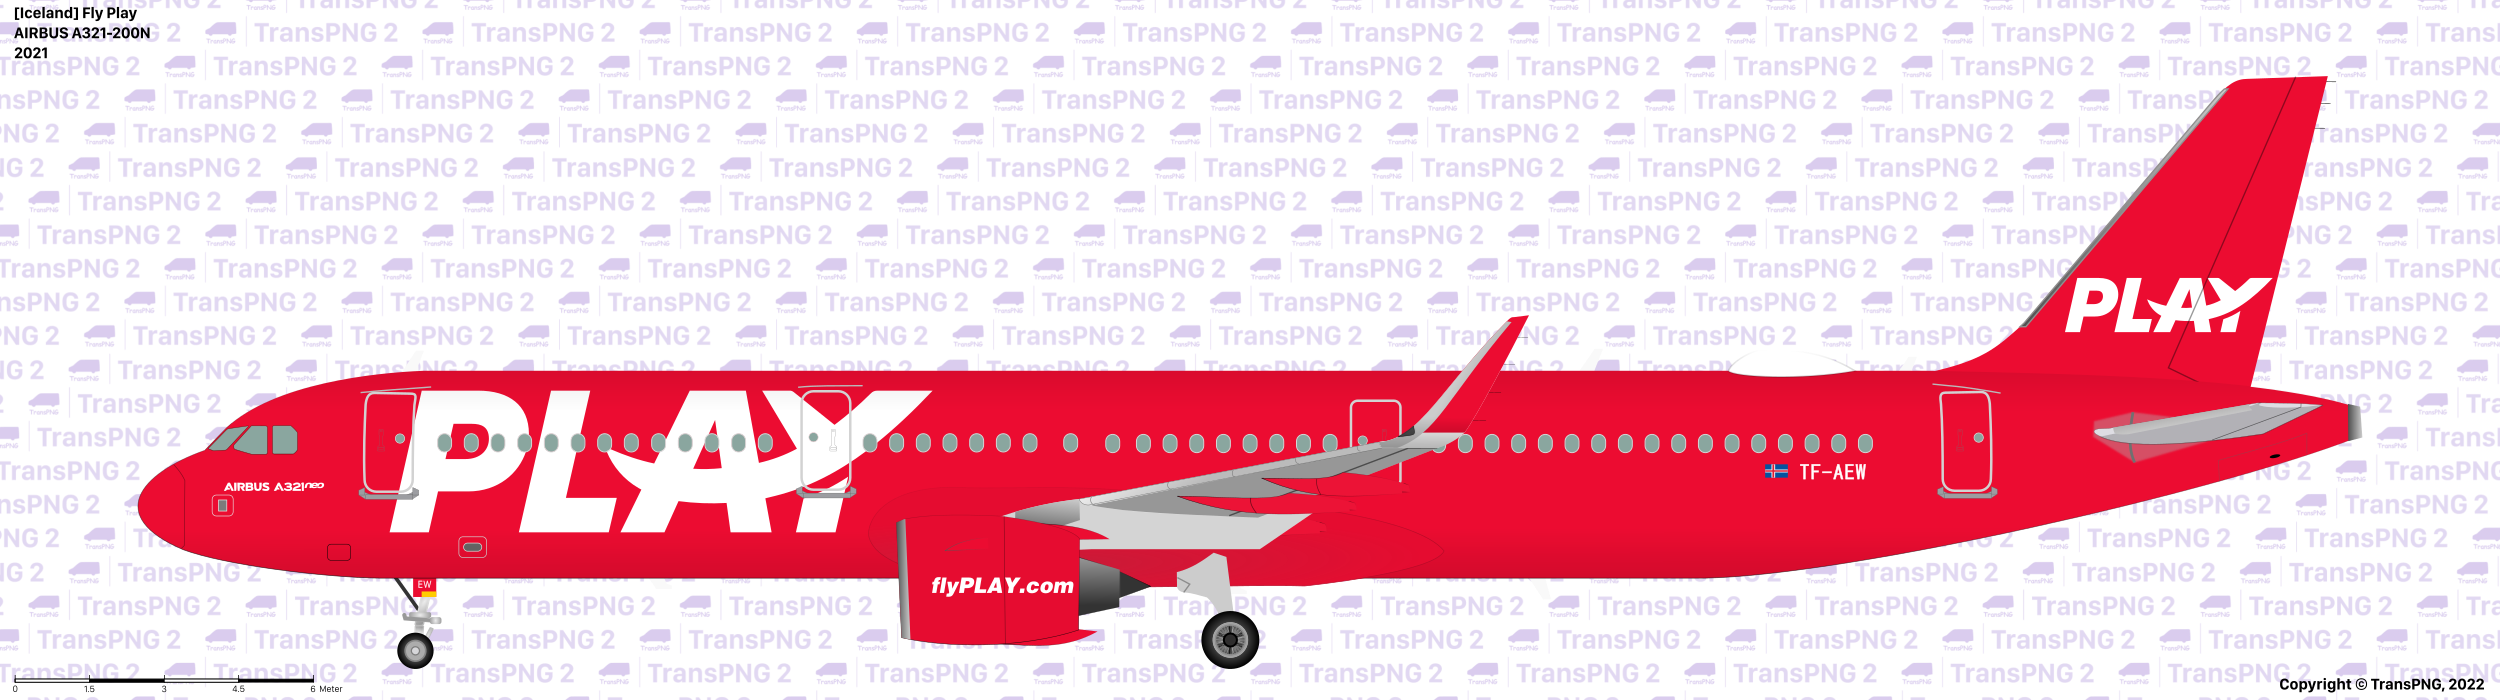 TransPNG.net | 分享世界各地多種交通工具的優秀繪圖 - 飛機 51881011064_02dae4746e_o